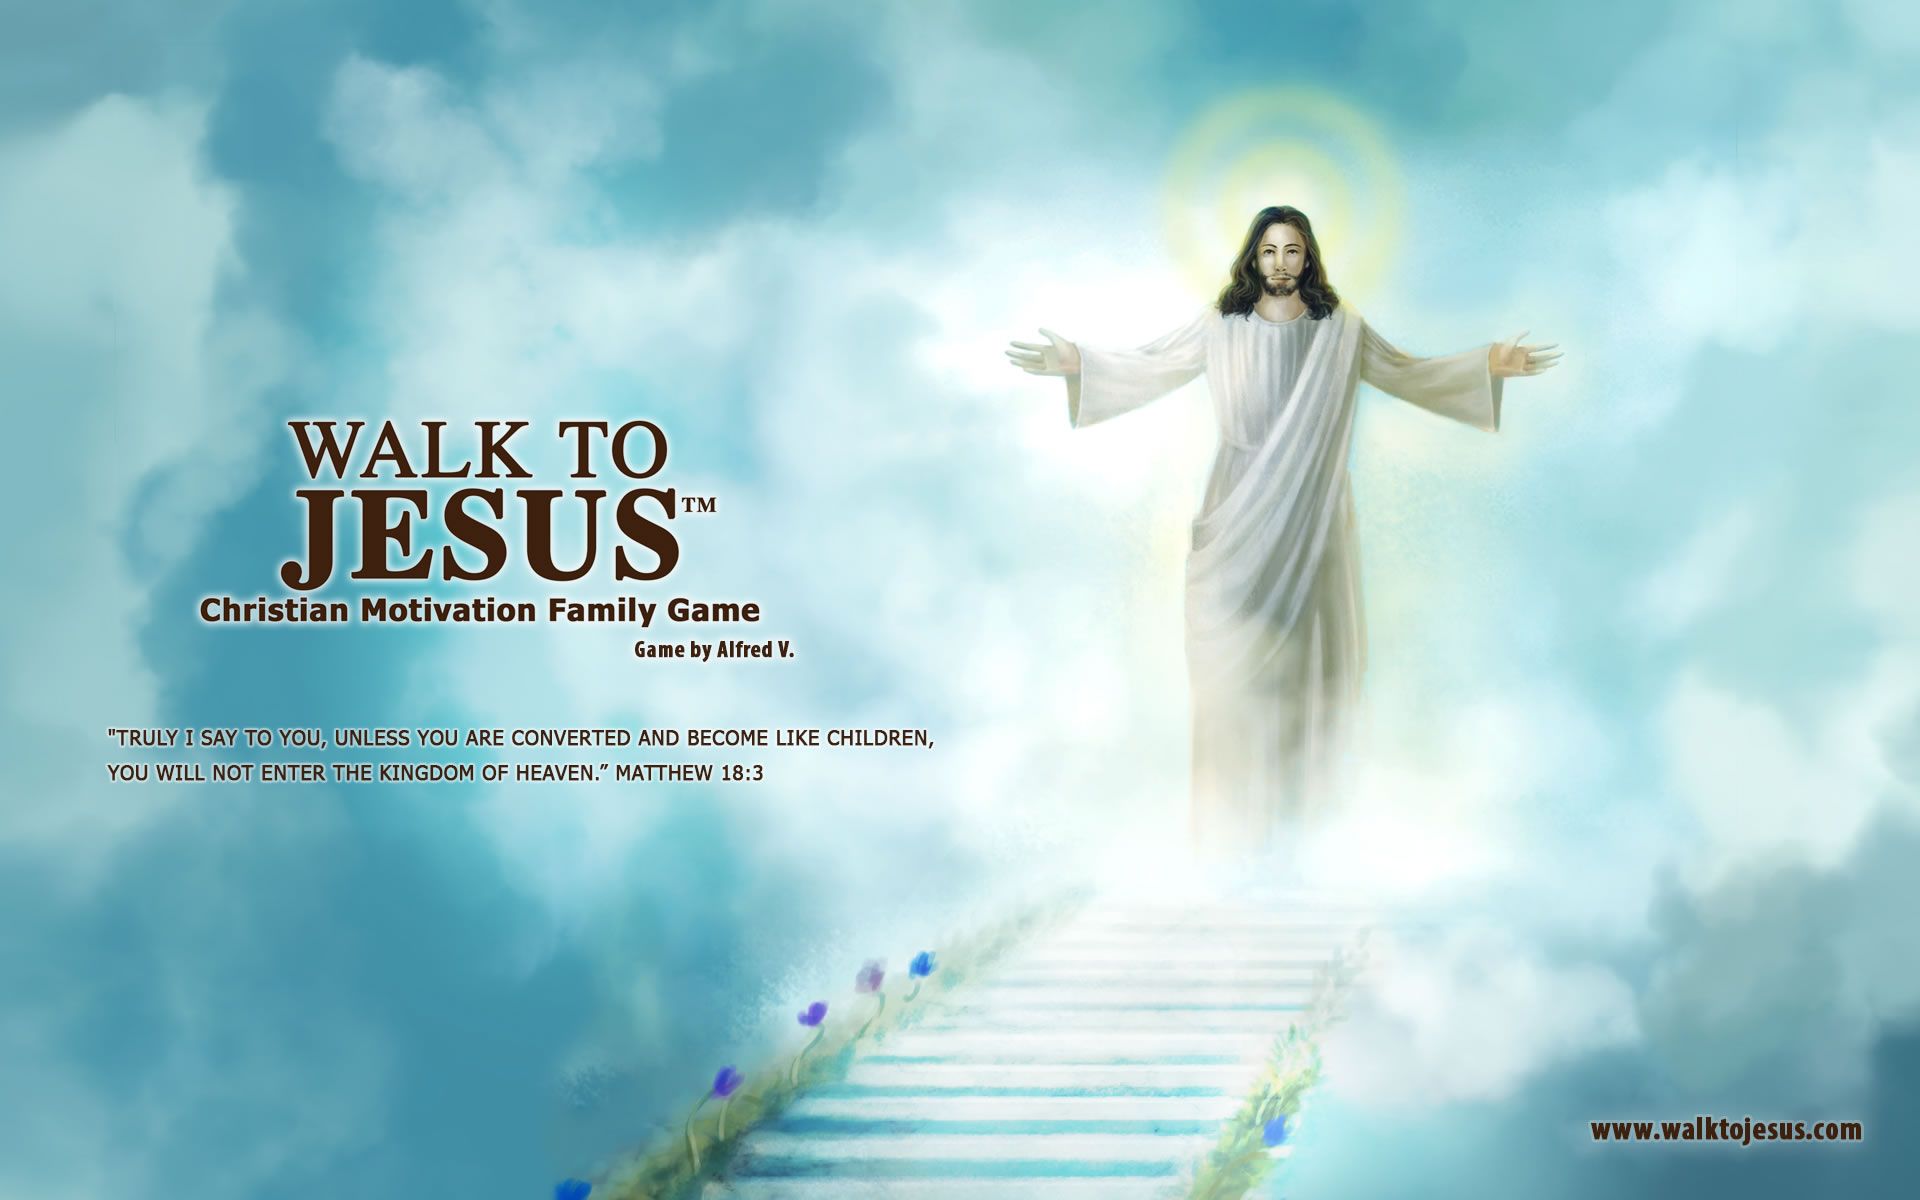 Walk to Jesus Fan Club - Walk to Jesus Walk to Jesus